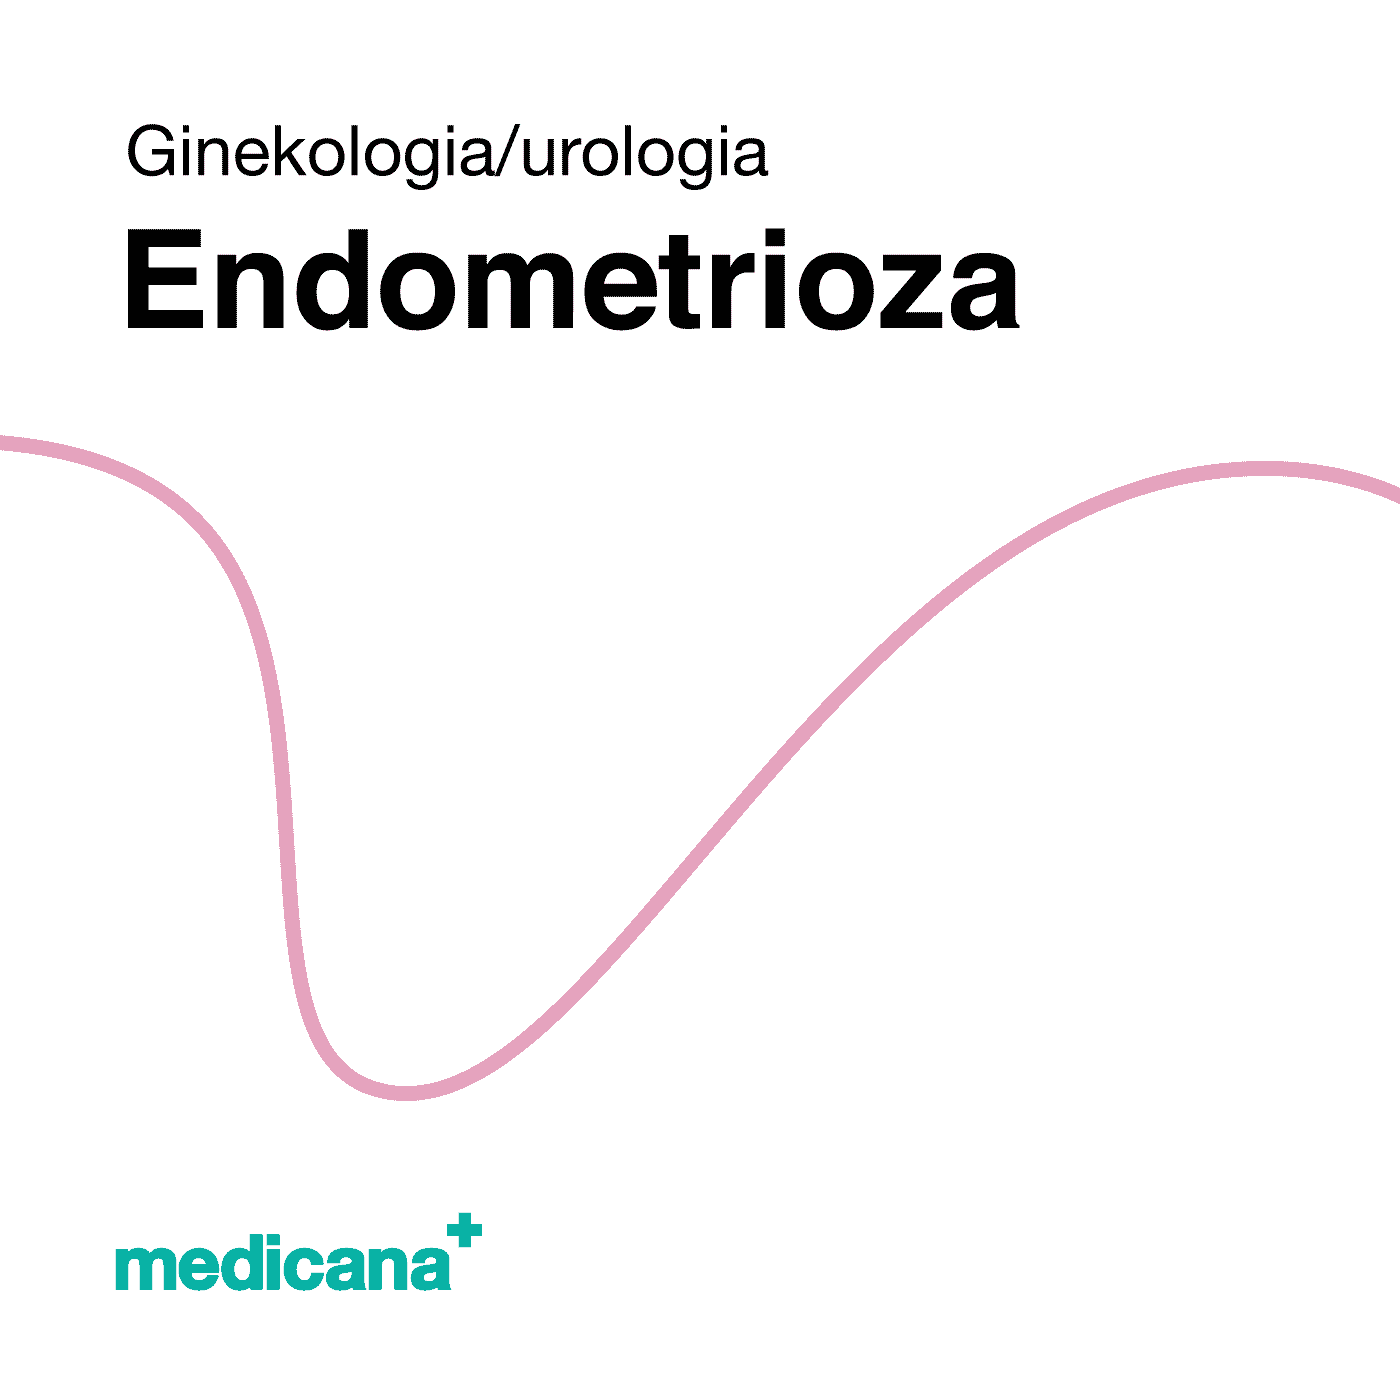 Grafika, białe tło różową kreską, czarnym napisem Ginekologia / Urologia - Endometrioza i logo Medicana Centrum Terapii Medyczna Marihuana w lewym dolnym rogu.